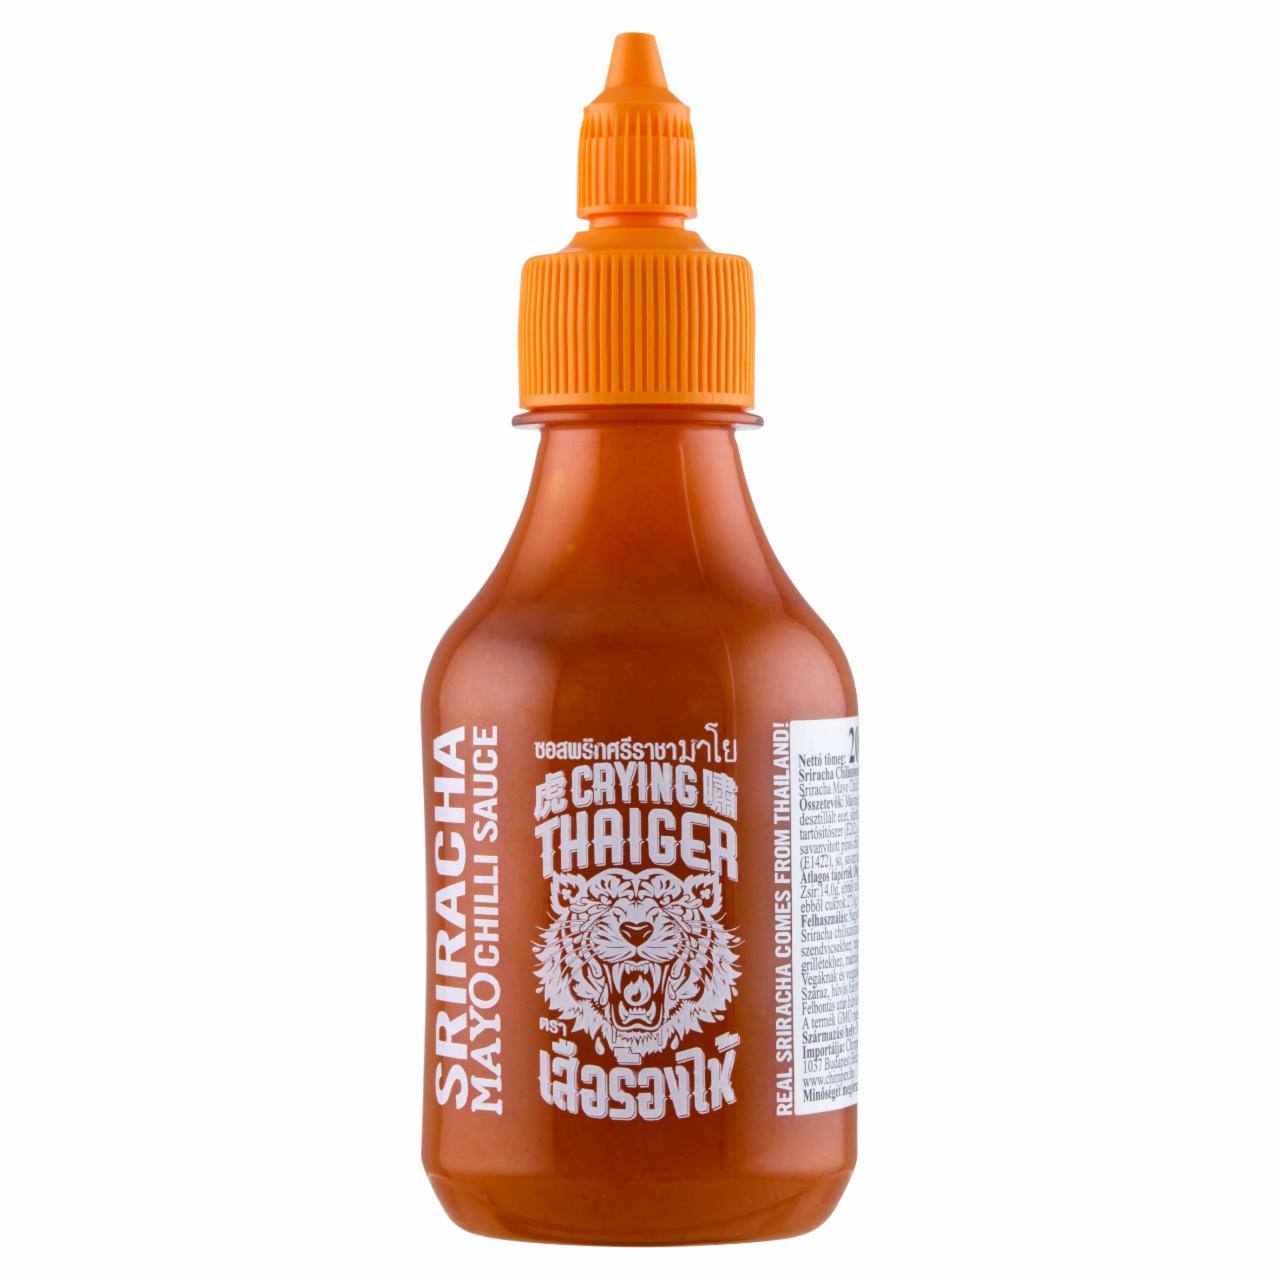 Képek - Crying Thaiger Sriracha chiliszószos majonéz 200 ml